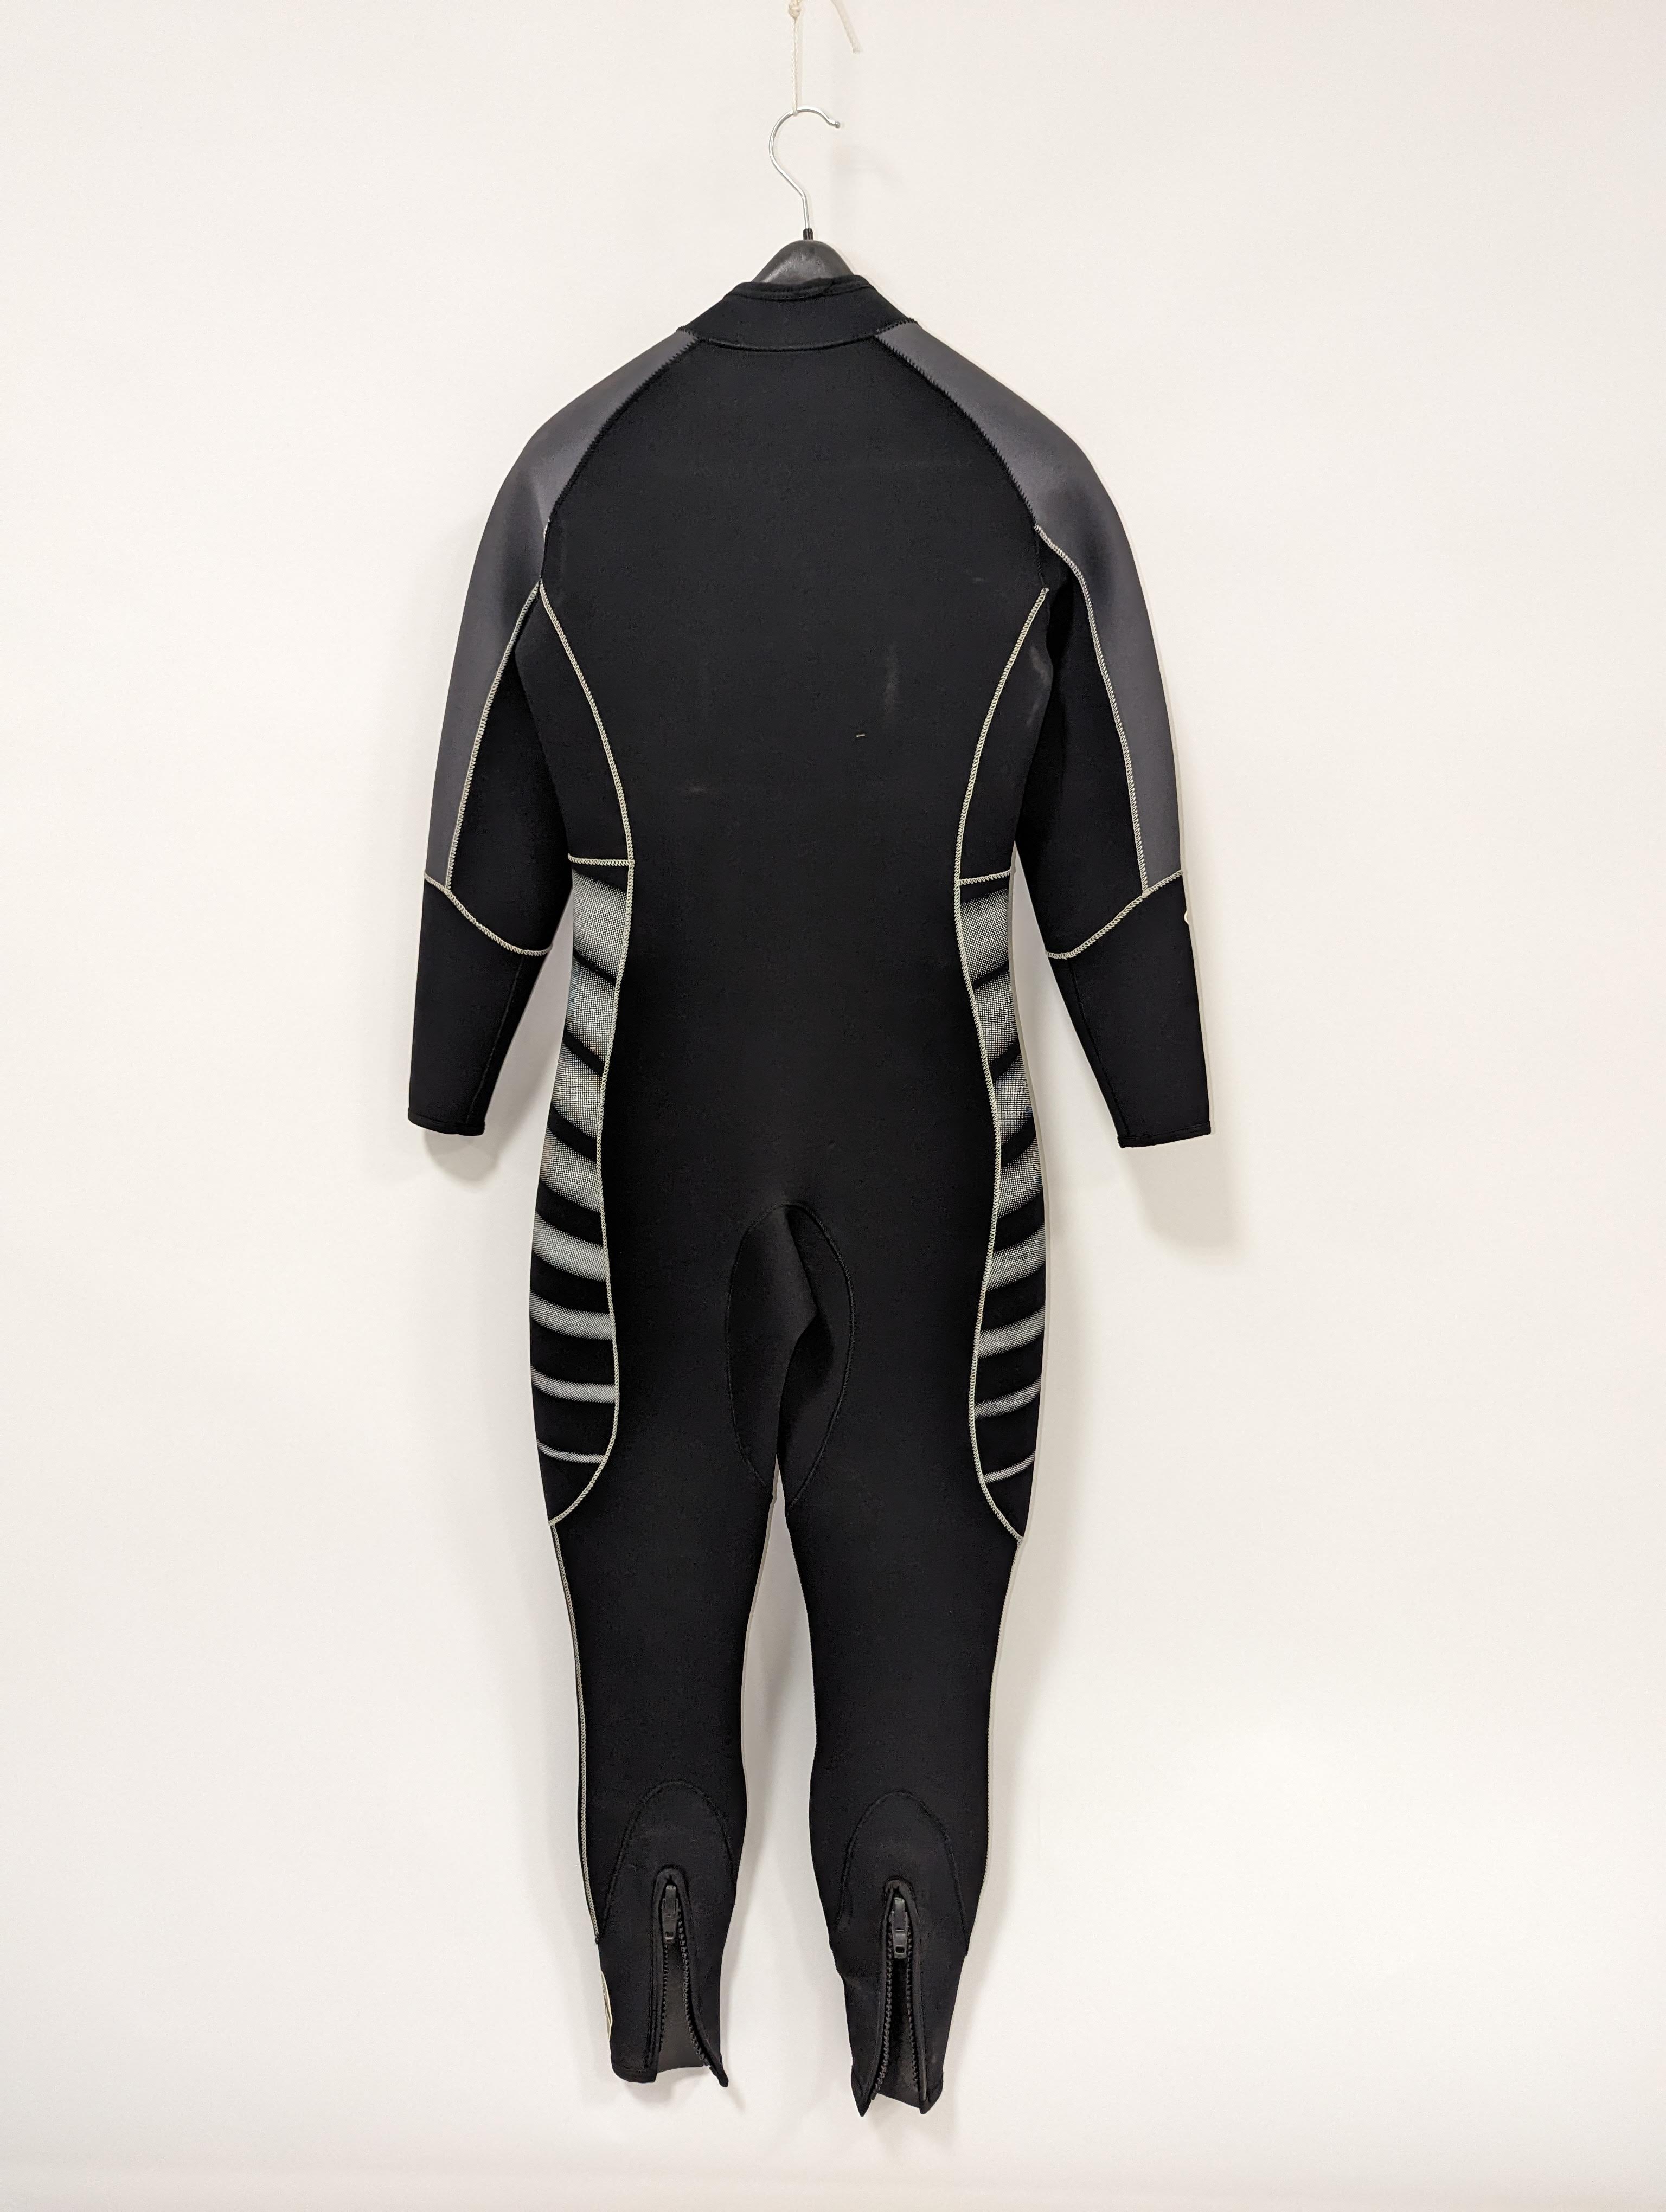 Anzug 2,5 mm Damen Größe 38 Neopren aquata Surfen SUP Schwimmen